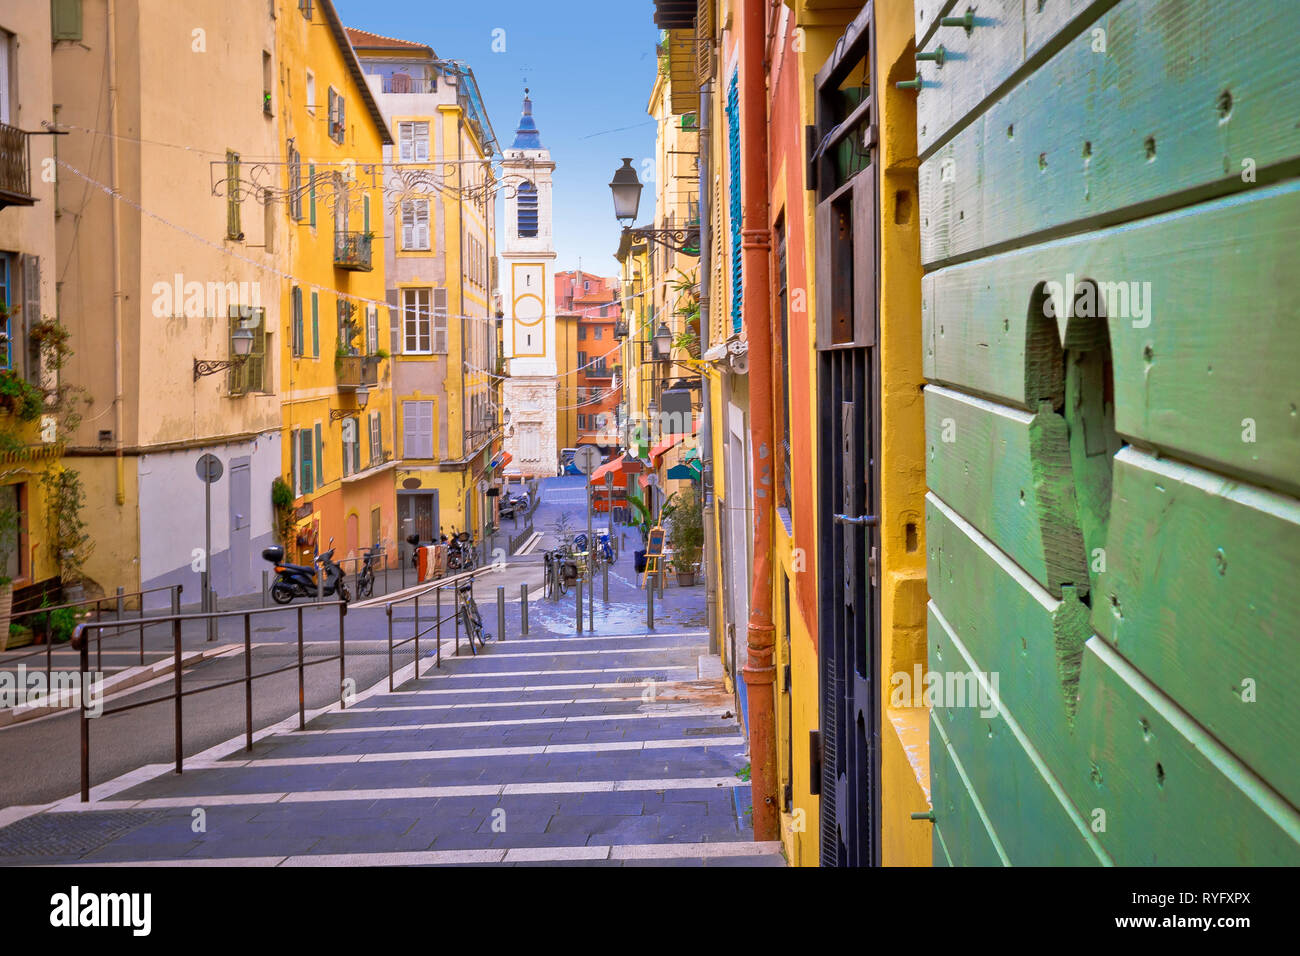 La città di Nizza colorata architettura di strada e la vista della chiesa, destinazione turistica della riviera francese, Alpes Maritimes depatment della Francia Foto Stock